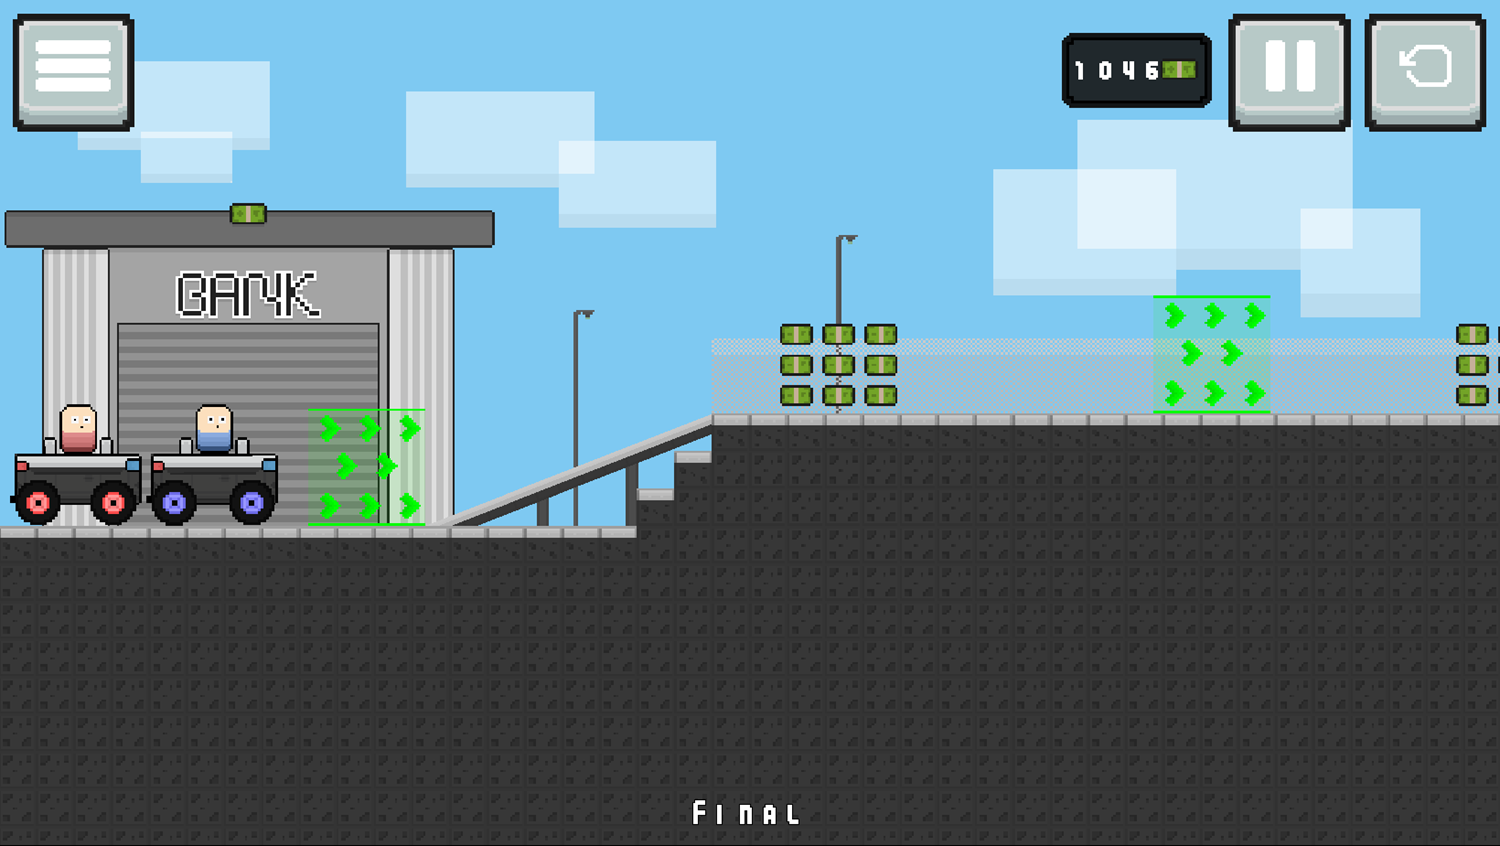 Egg Hill Climb Game Final Level Screenshot.